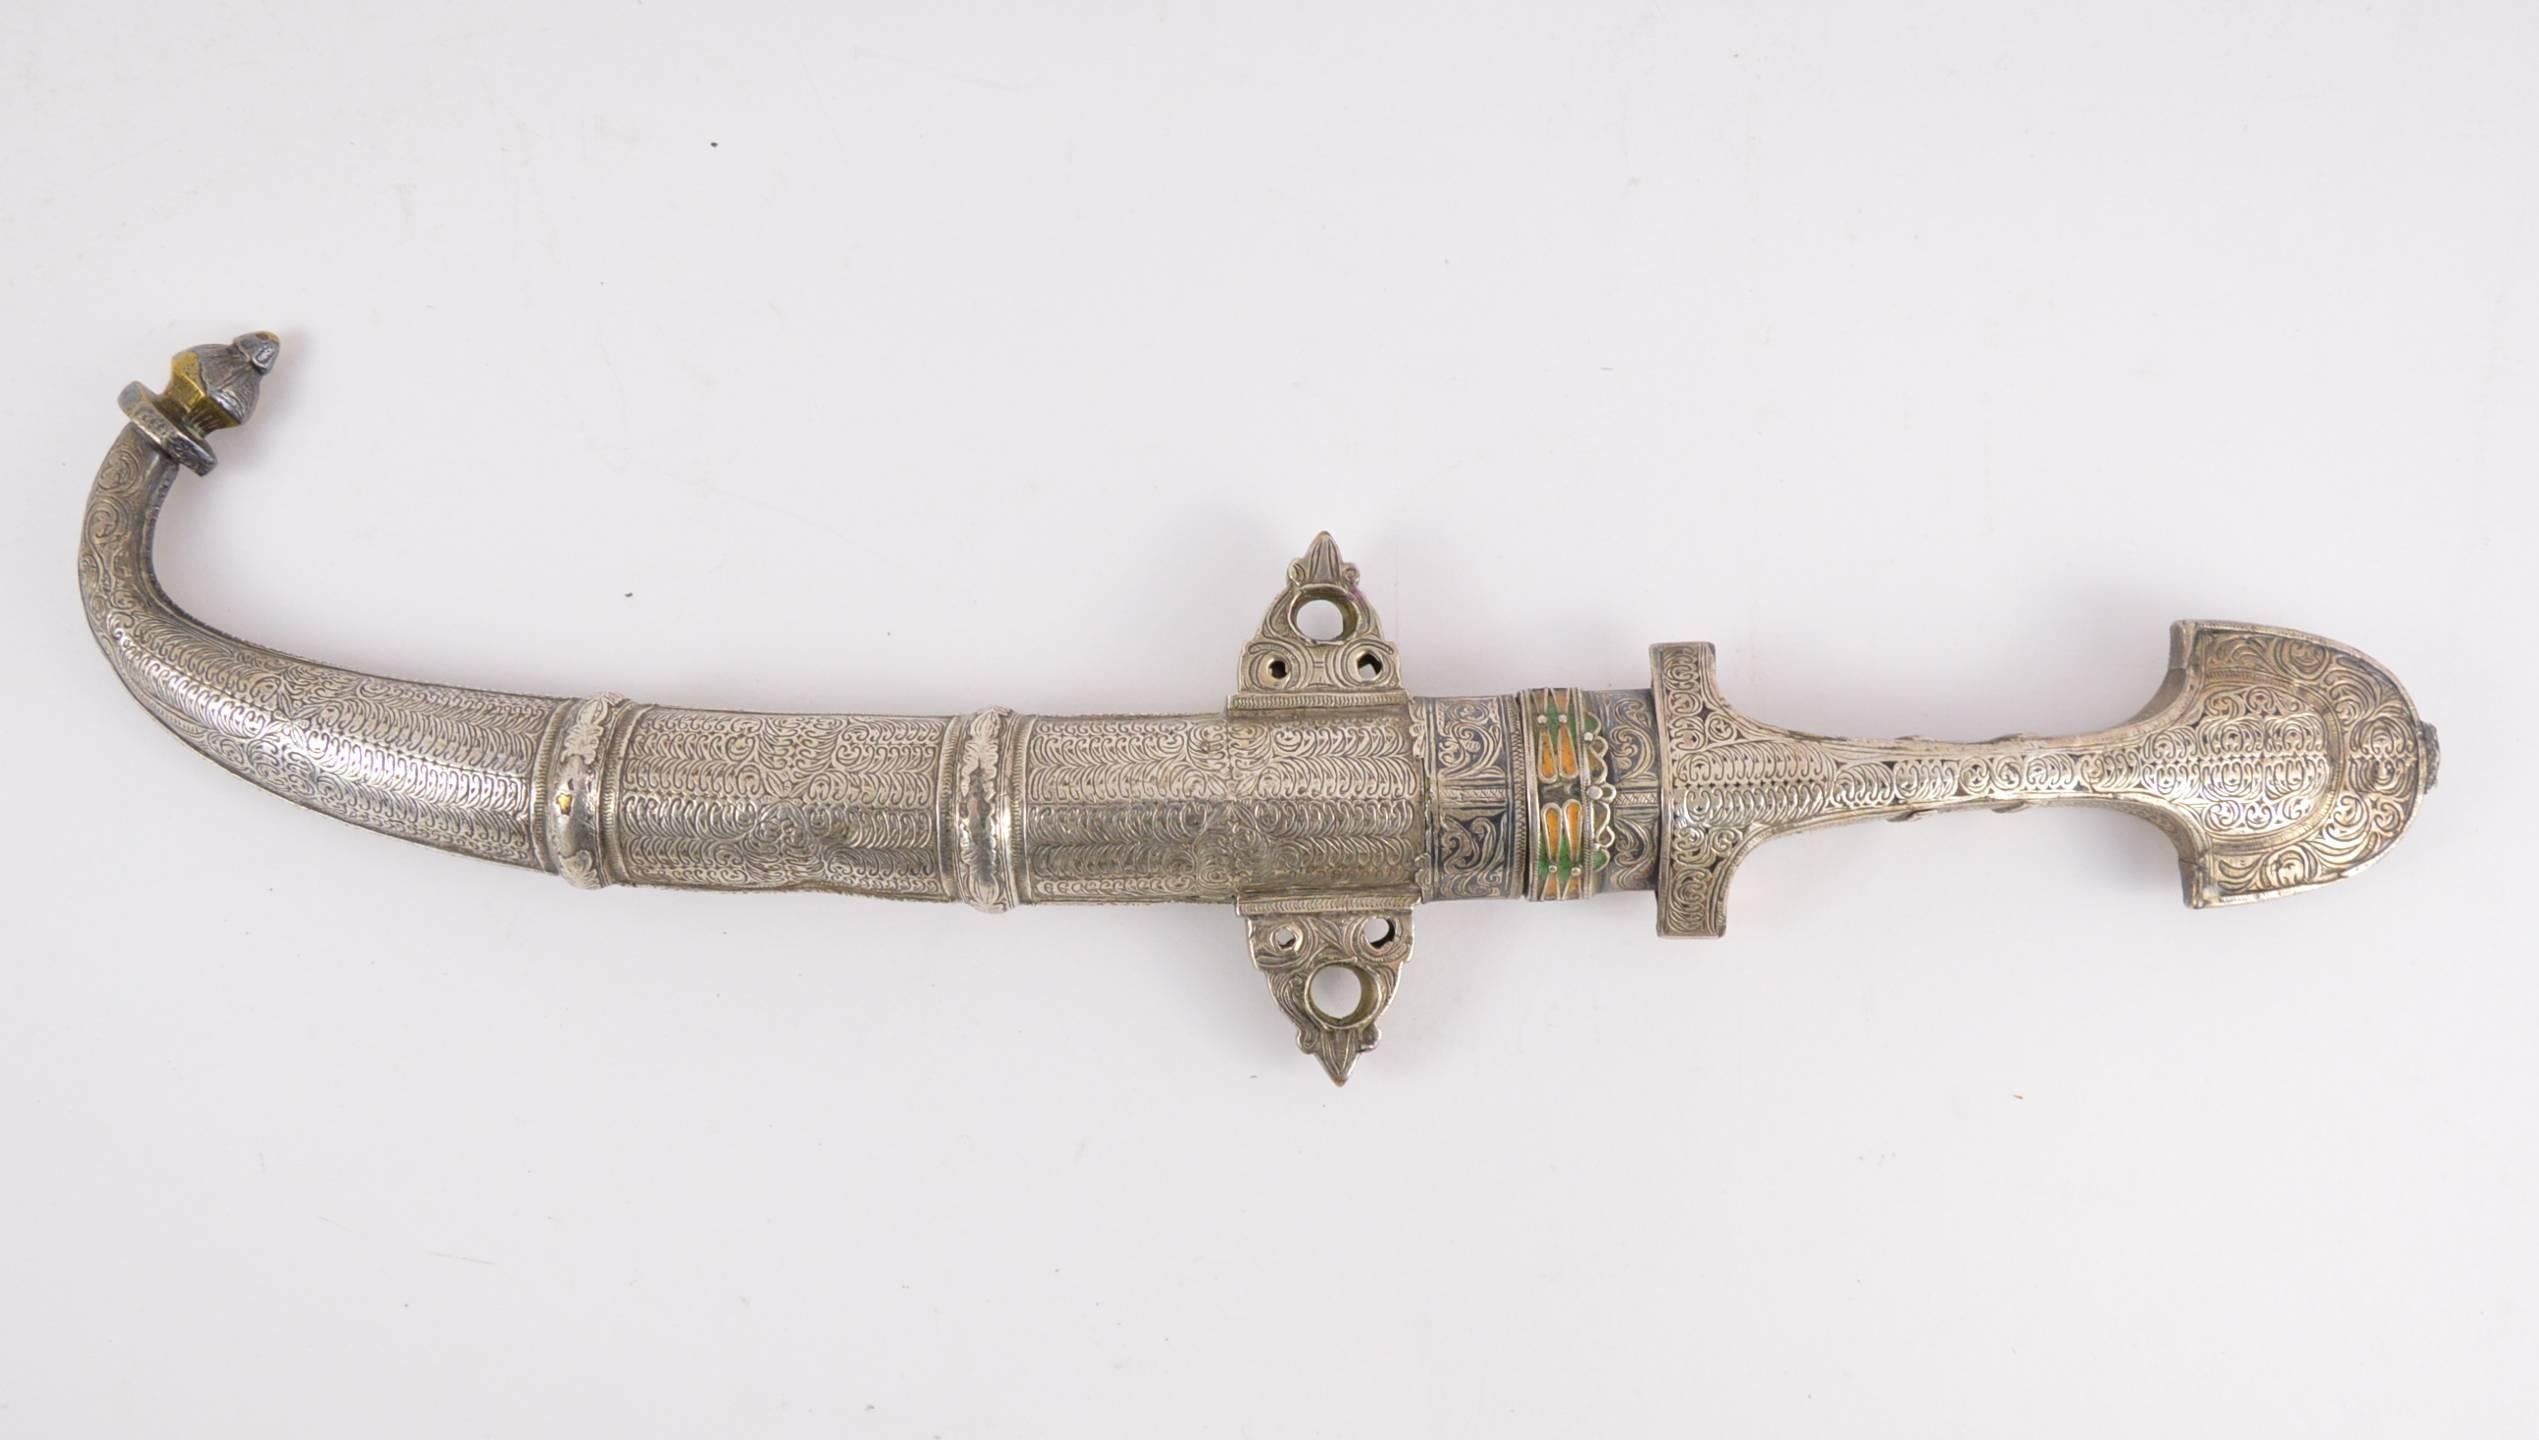 Antique middle-eastern dagger. Fine quality craftsmanship.